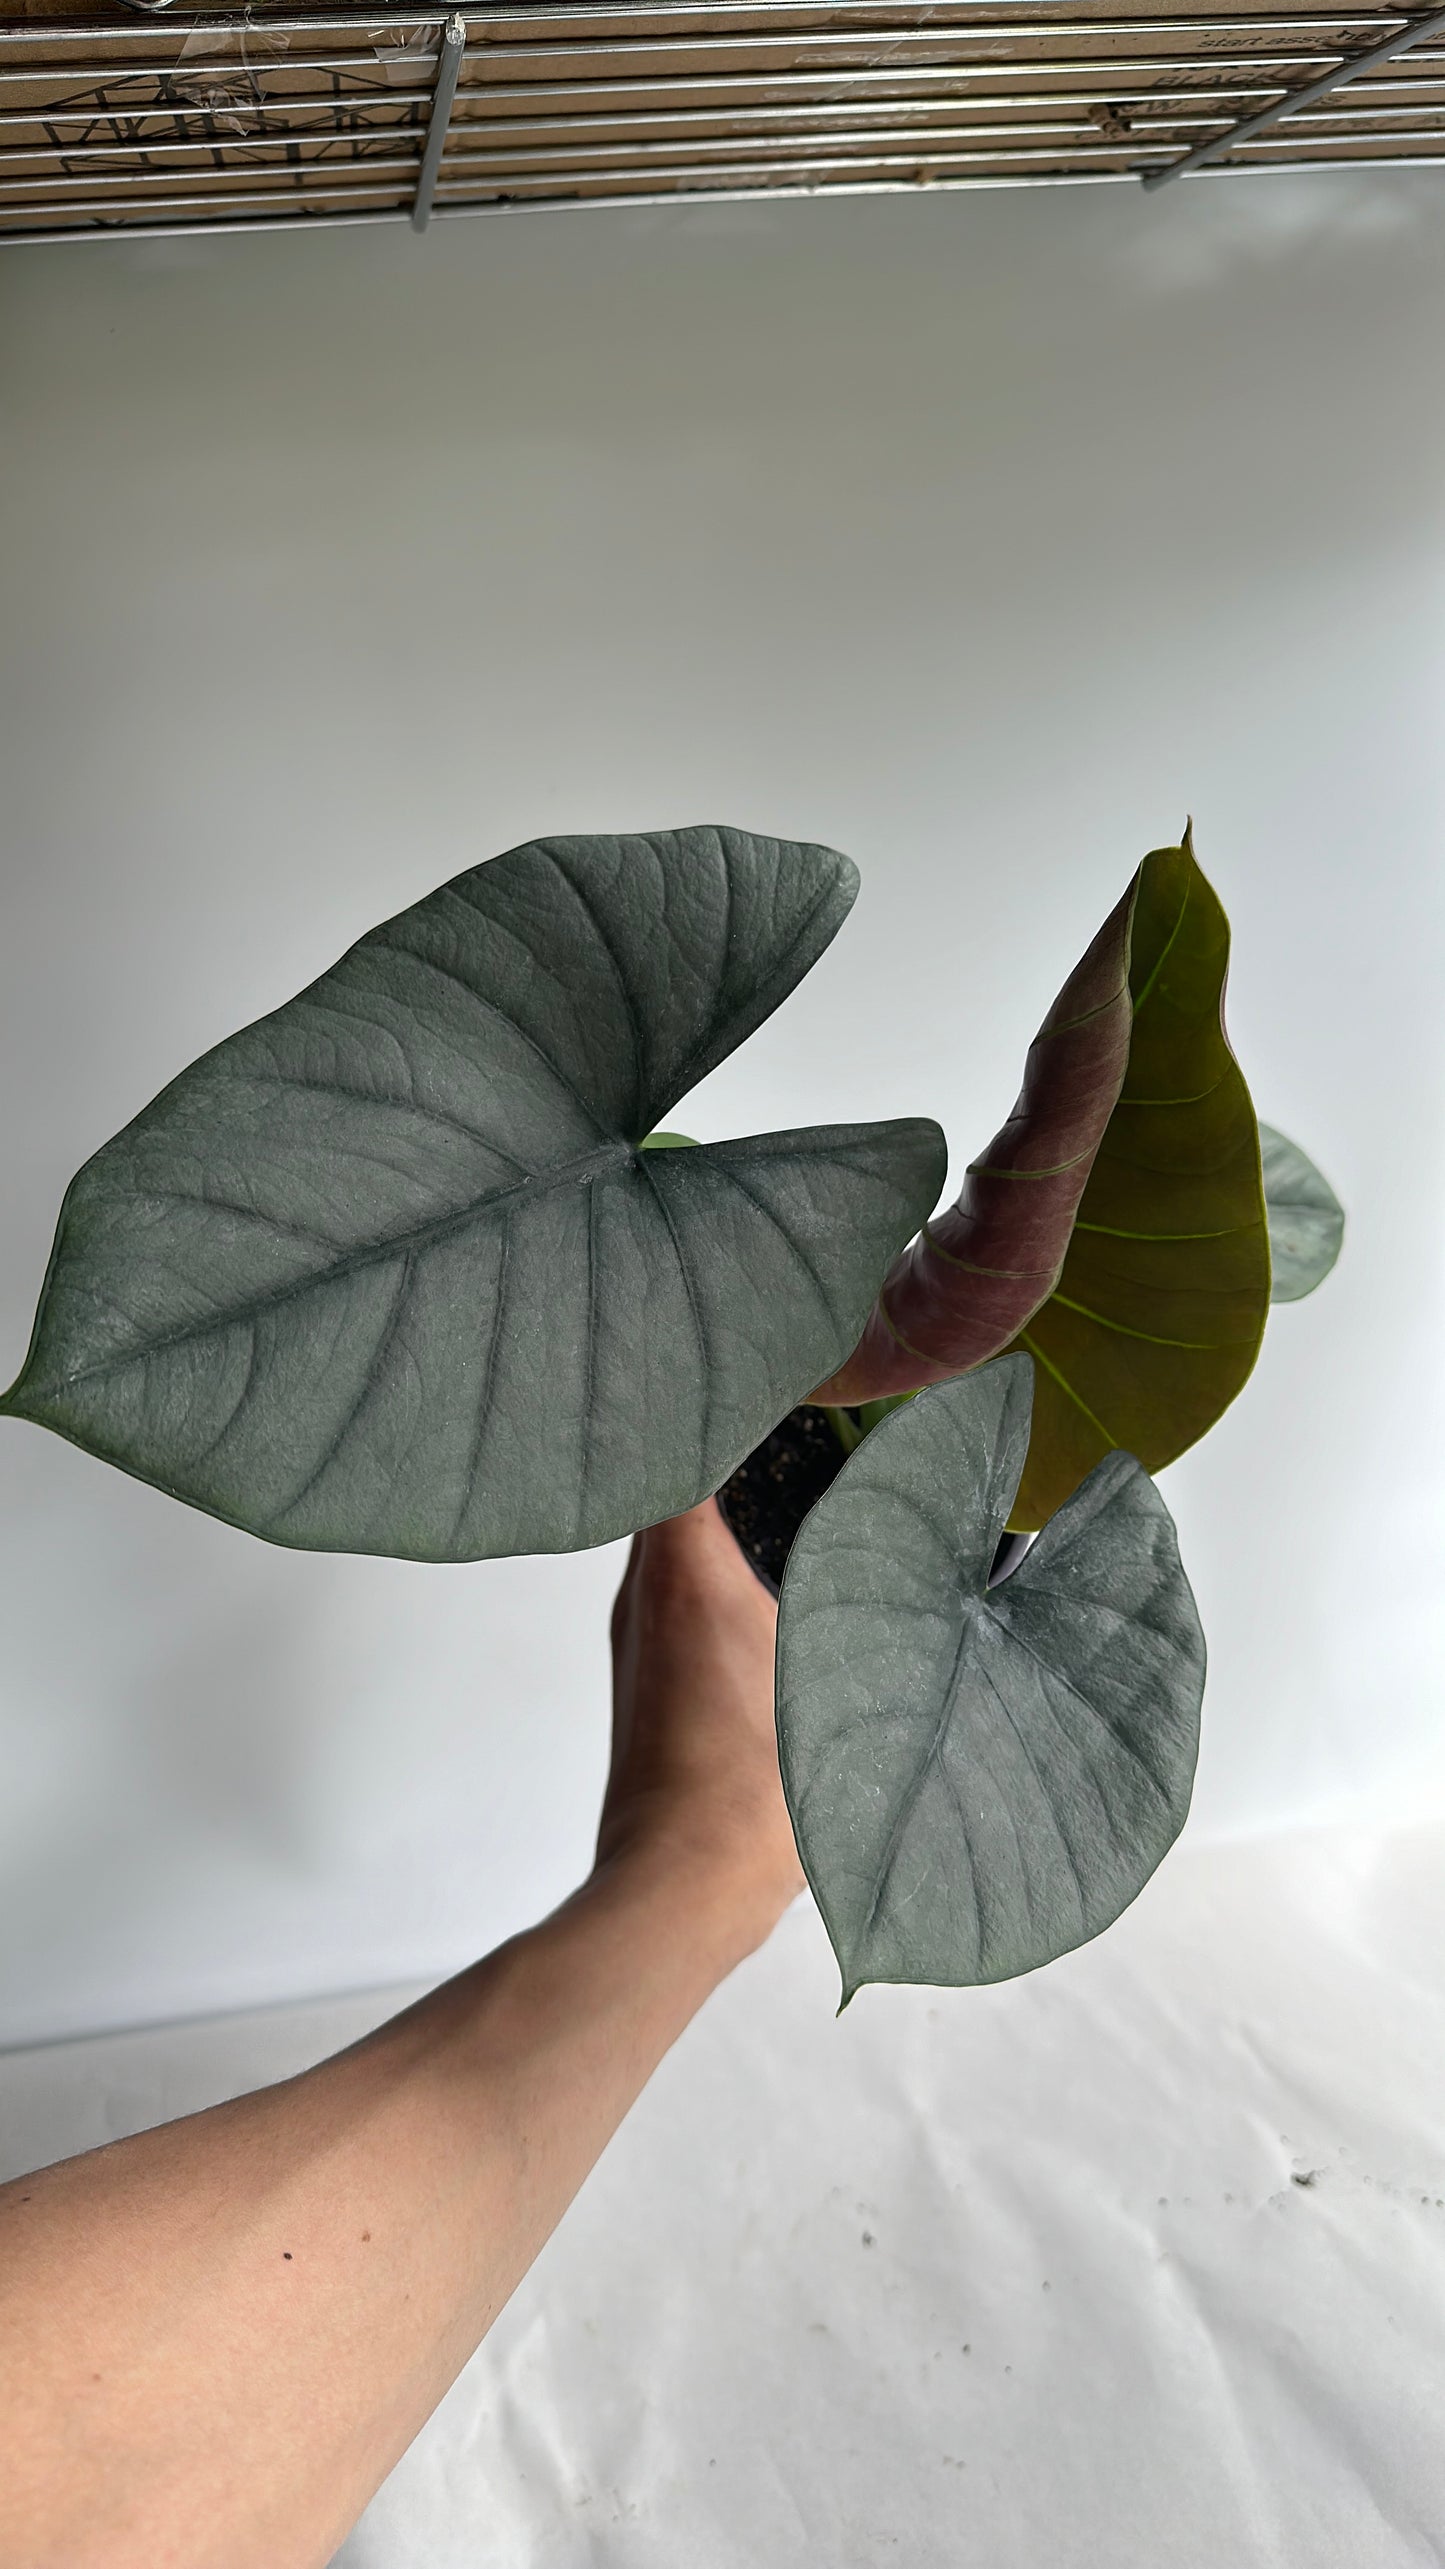 Alocasia reginae 4" | Jewel alocasia | rare alocasia | house plant | tropical plant